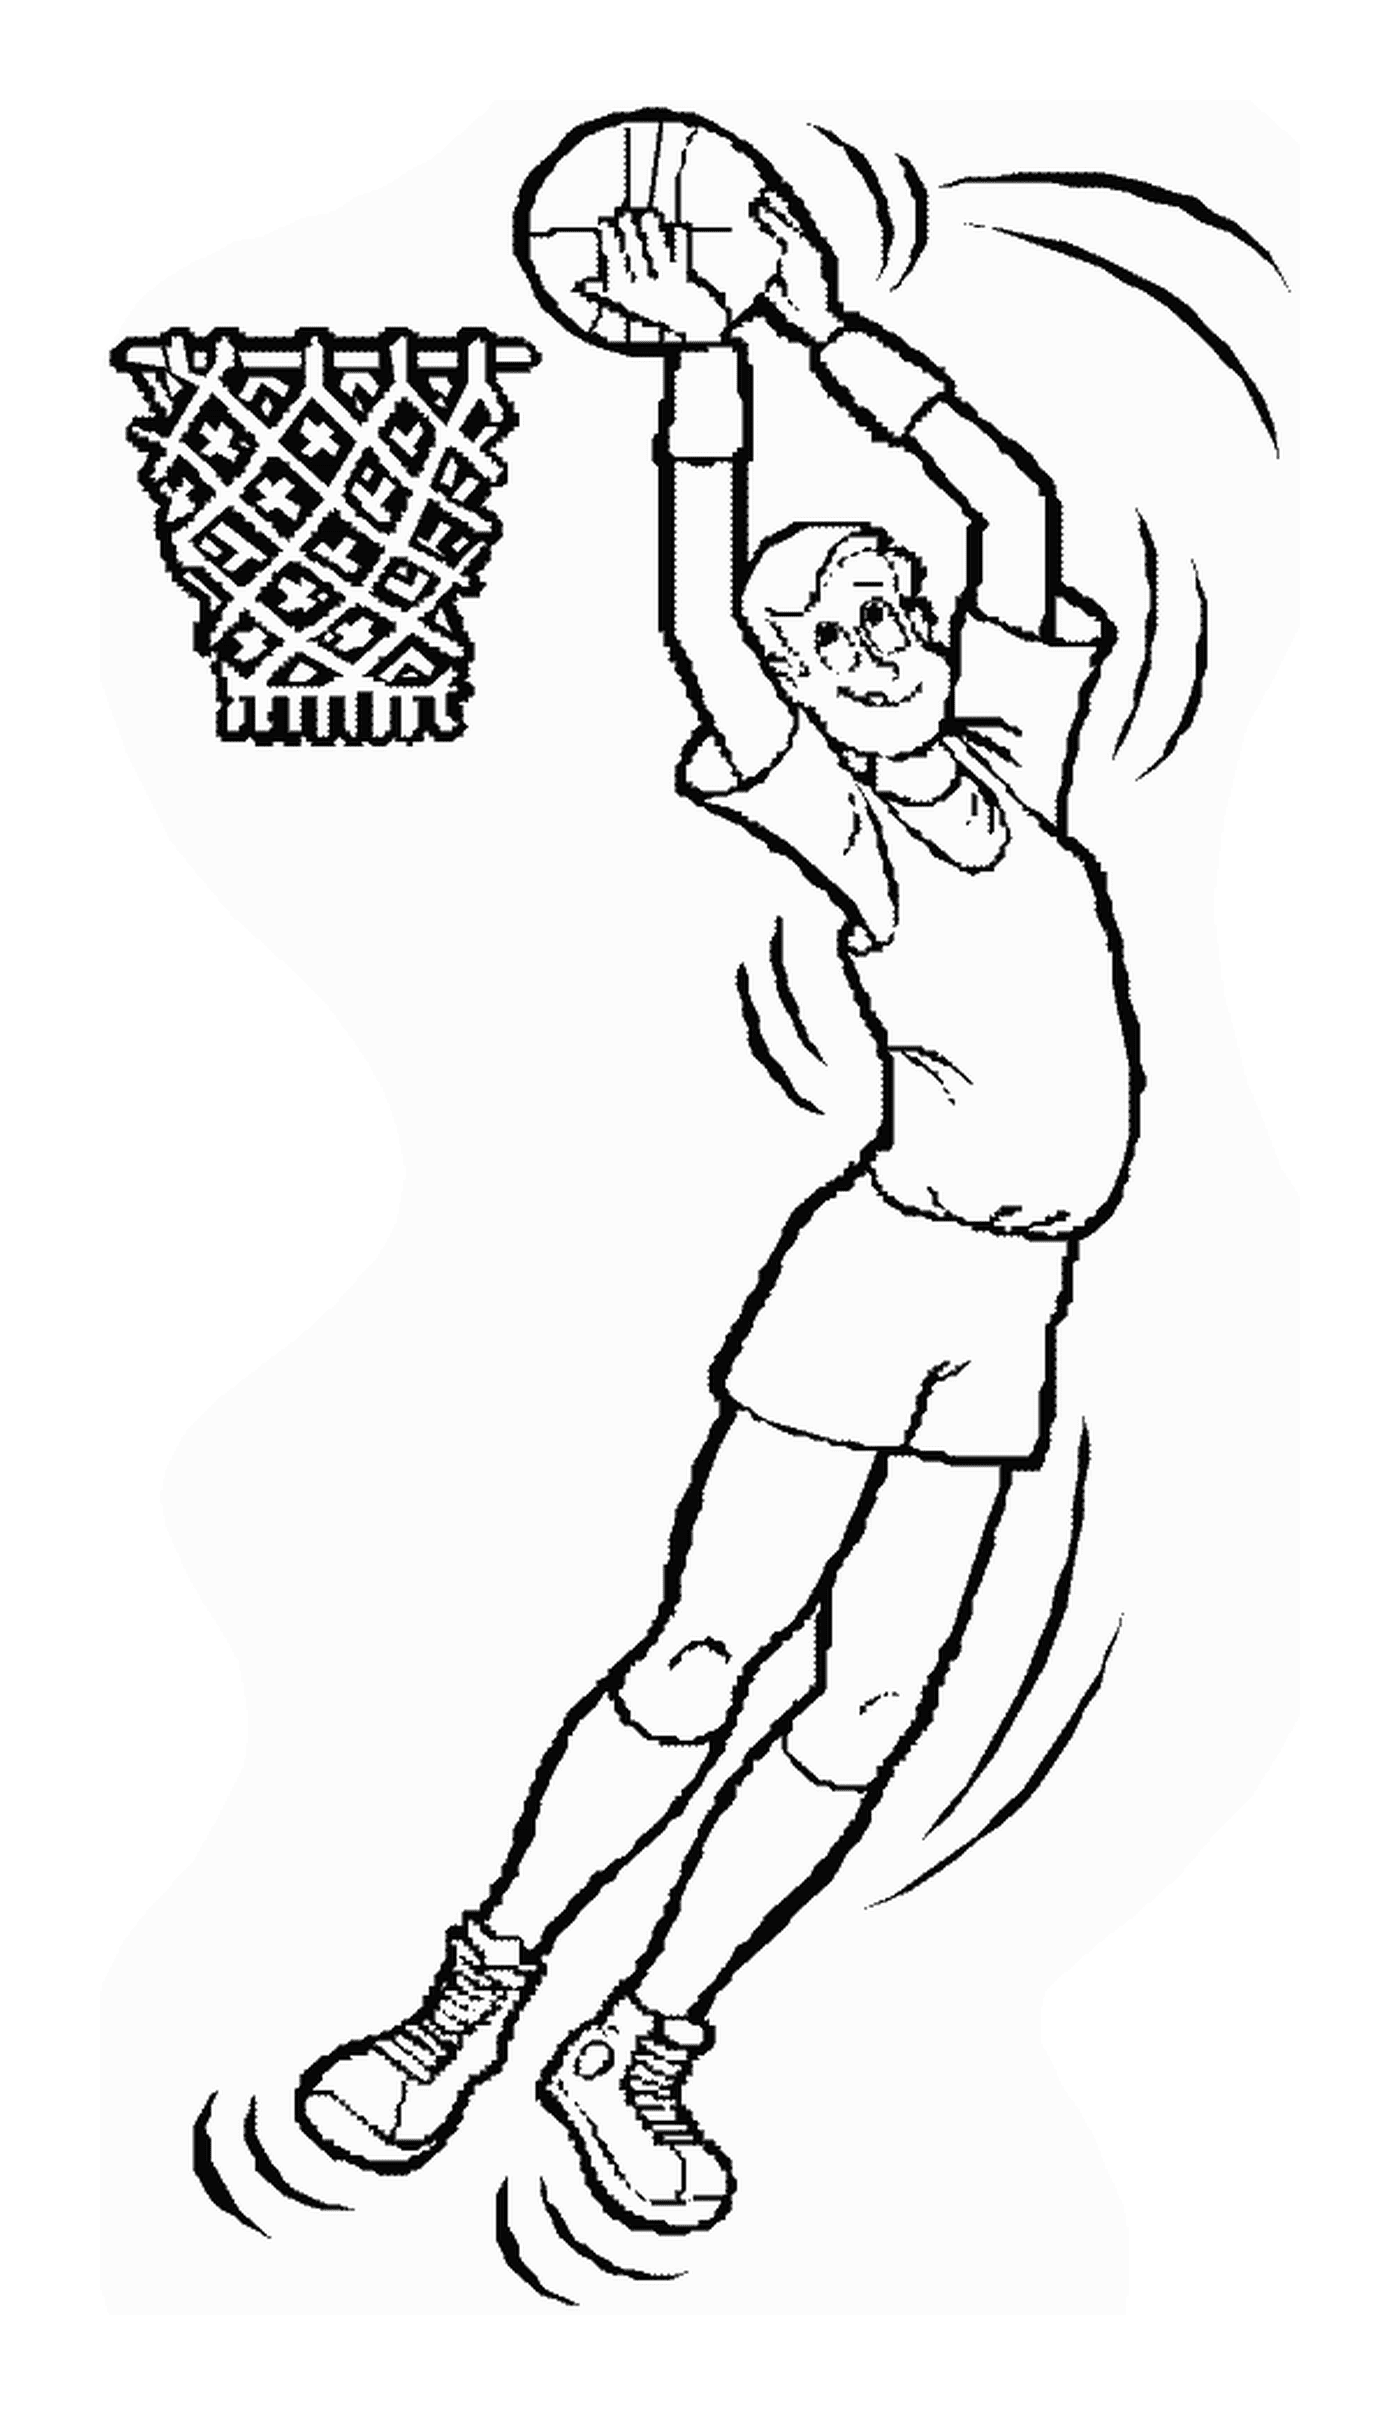  Человек прыгает, чтобы попасть в баскетбольный мяч 